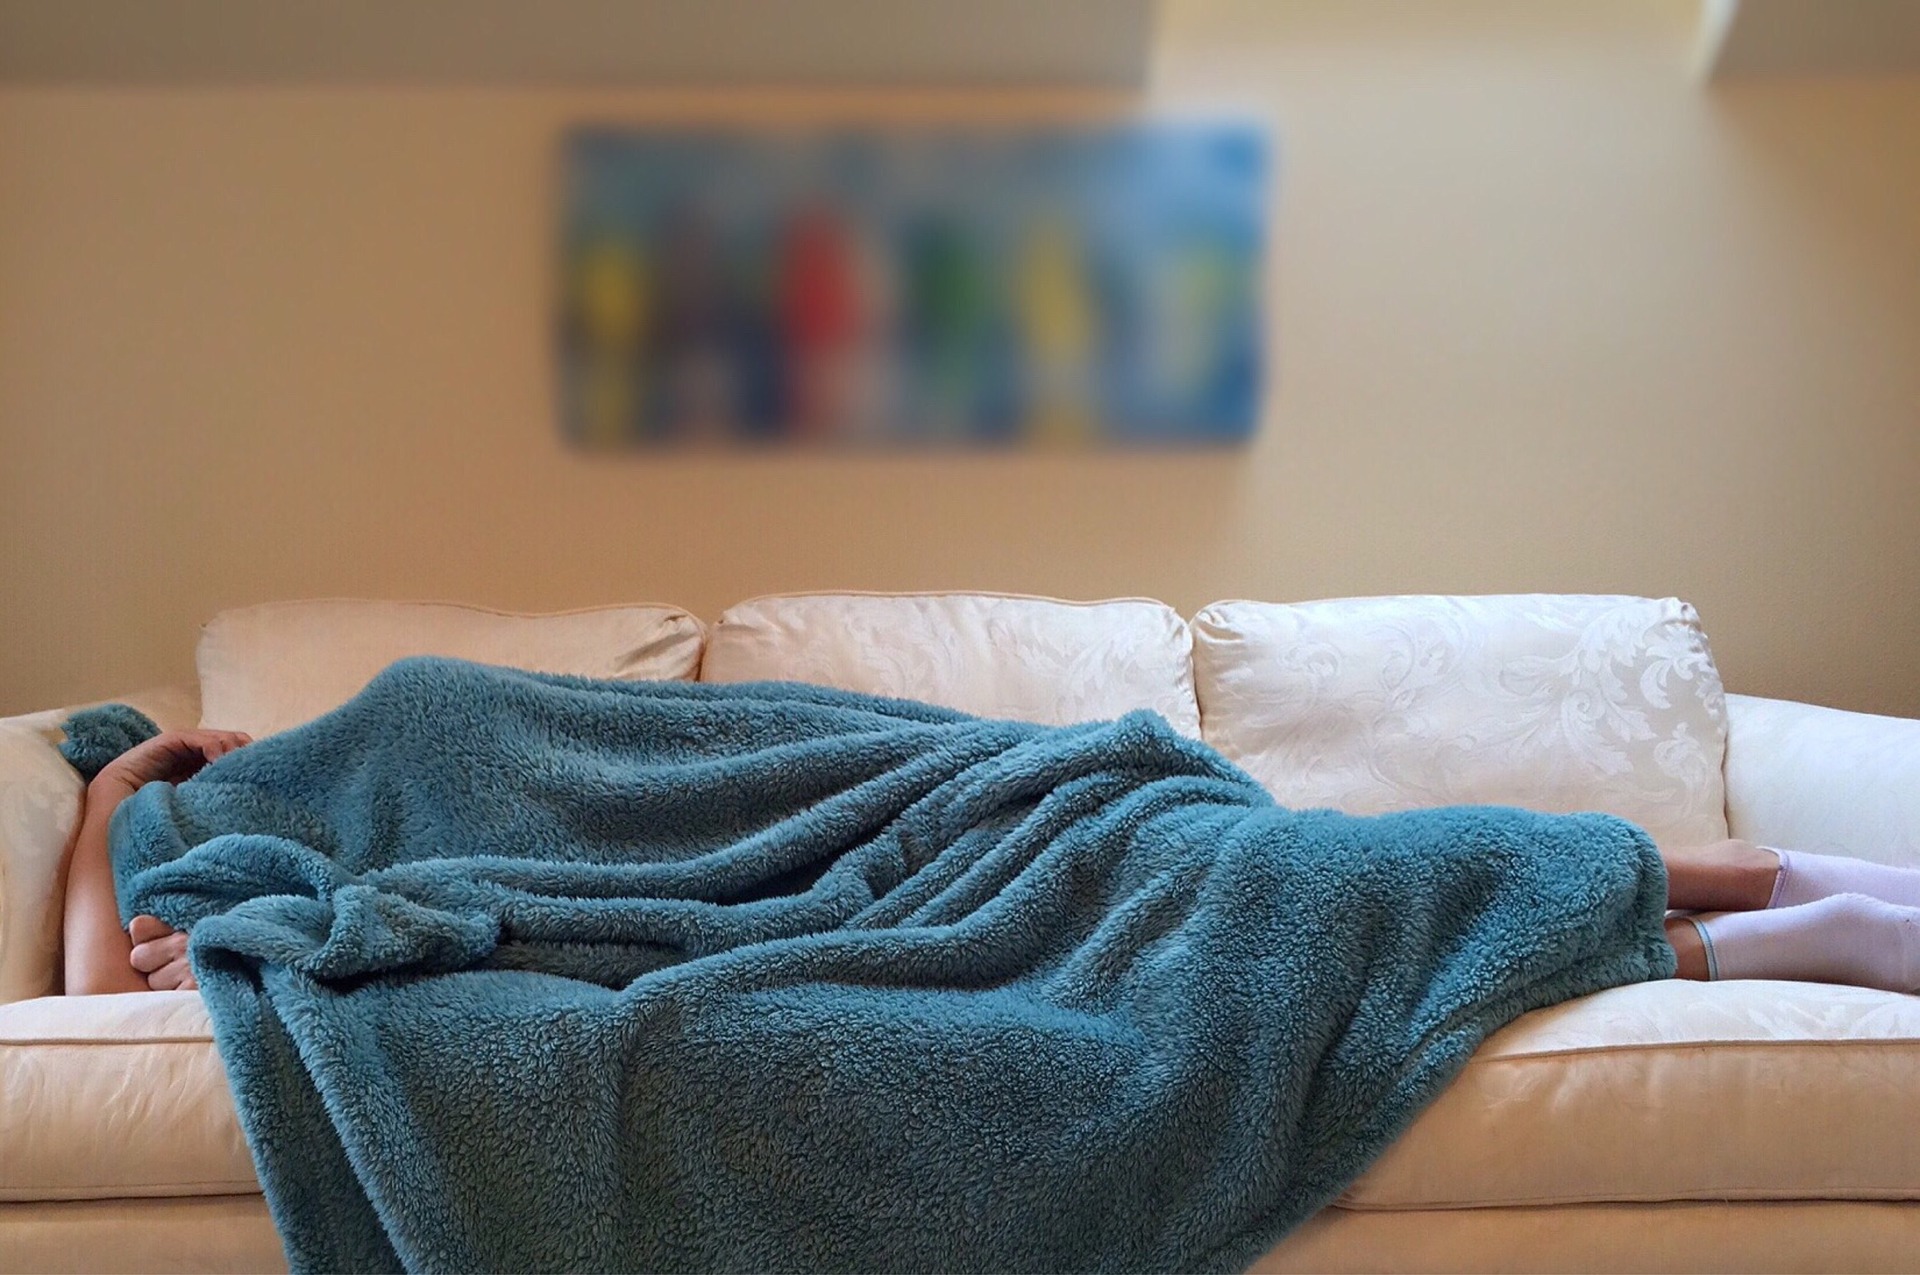 仕事に死ぬほど行きたくないと毛布に包まり寝ている人の画像